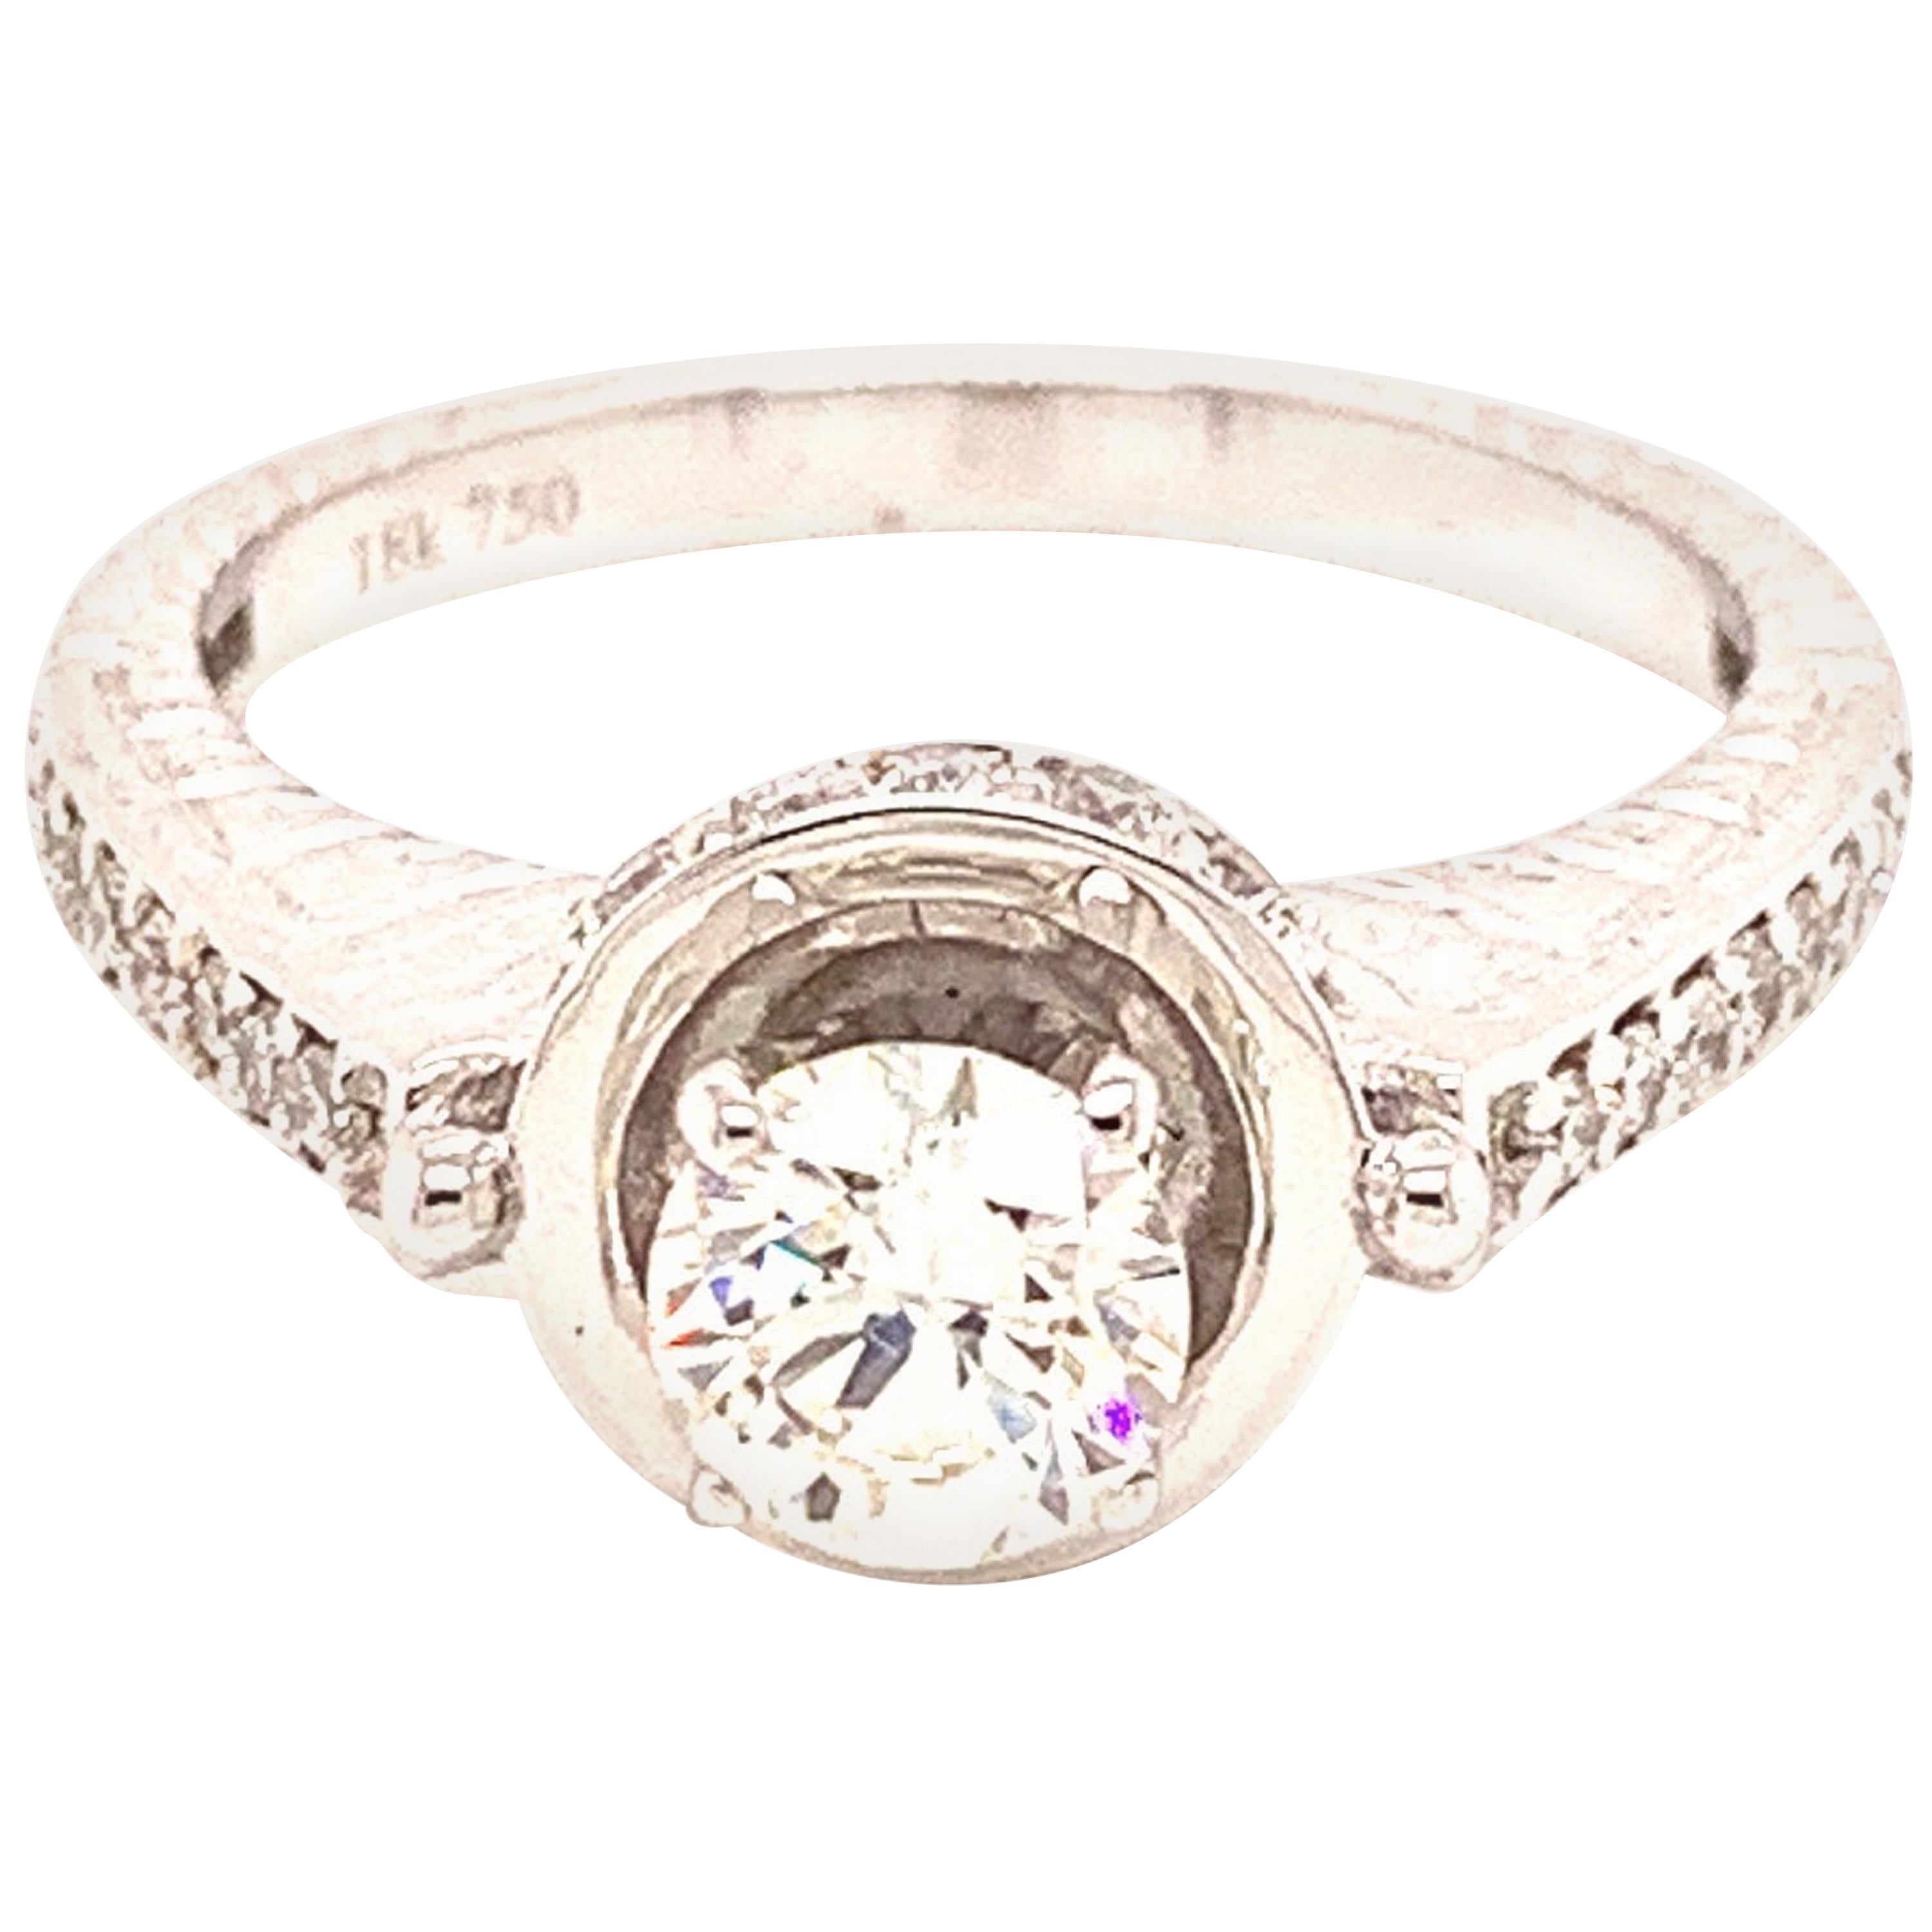 Verlobungsring mit GIA-zertifiziertem 0,56 Karat weißem Diamanten im runden Brillantschliff